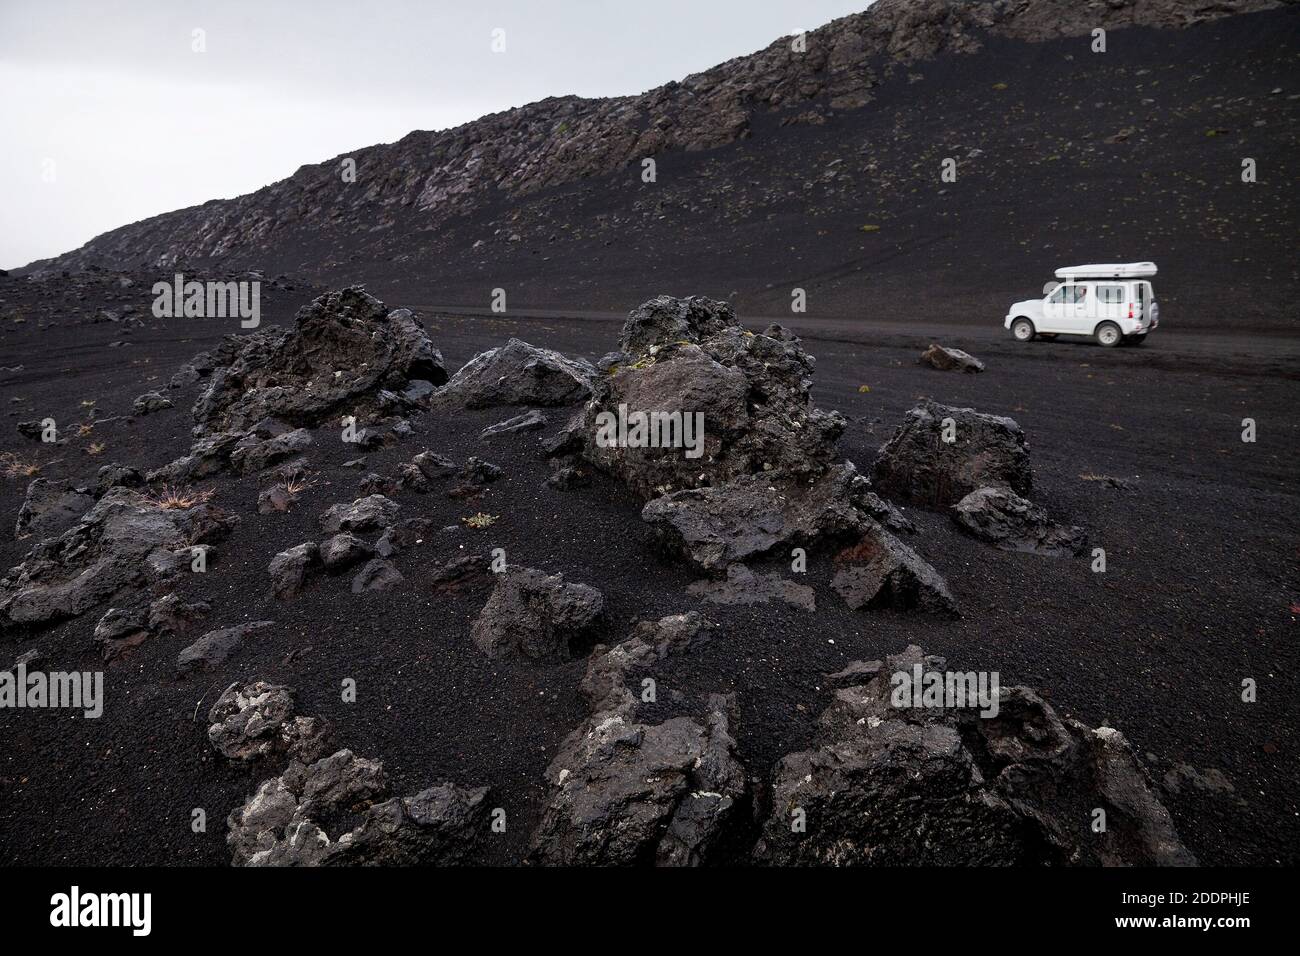 Voiture blanche dans le paysage de lave noire, Islande, Landmannaleid Banque D'Images